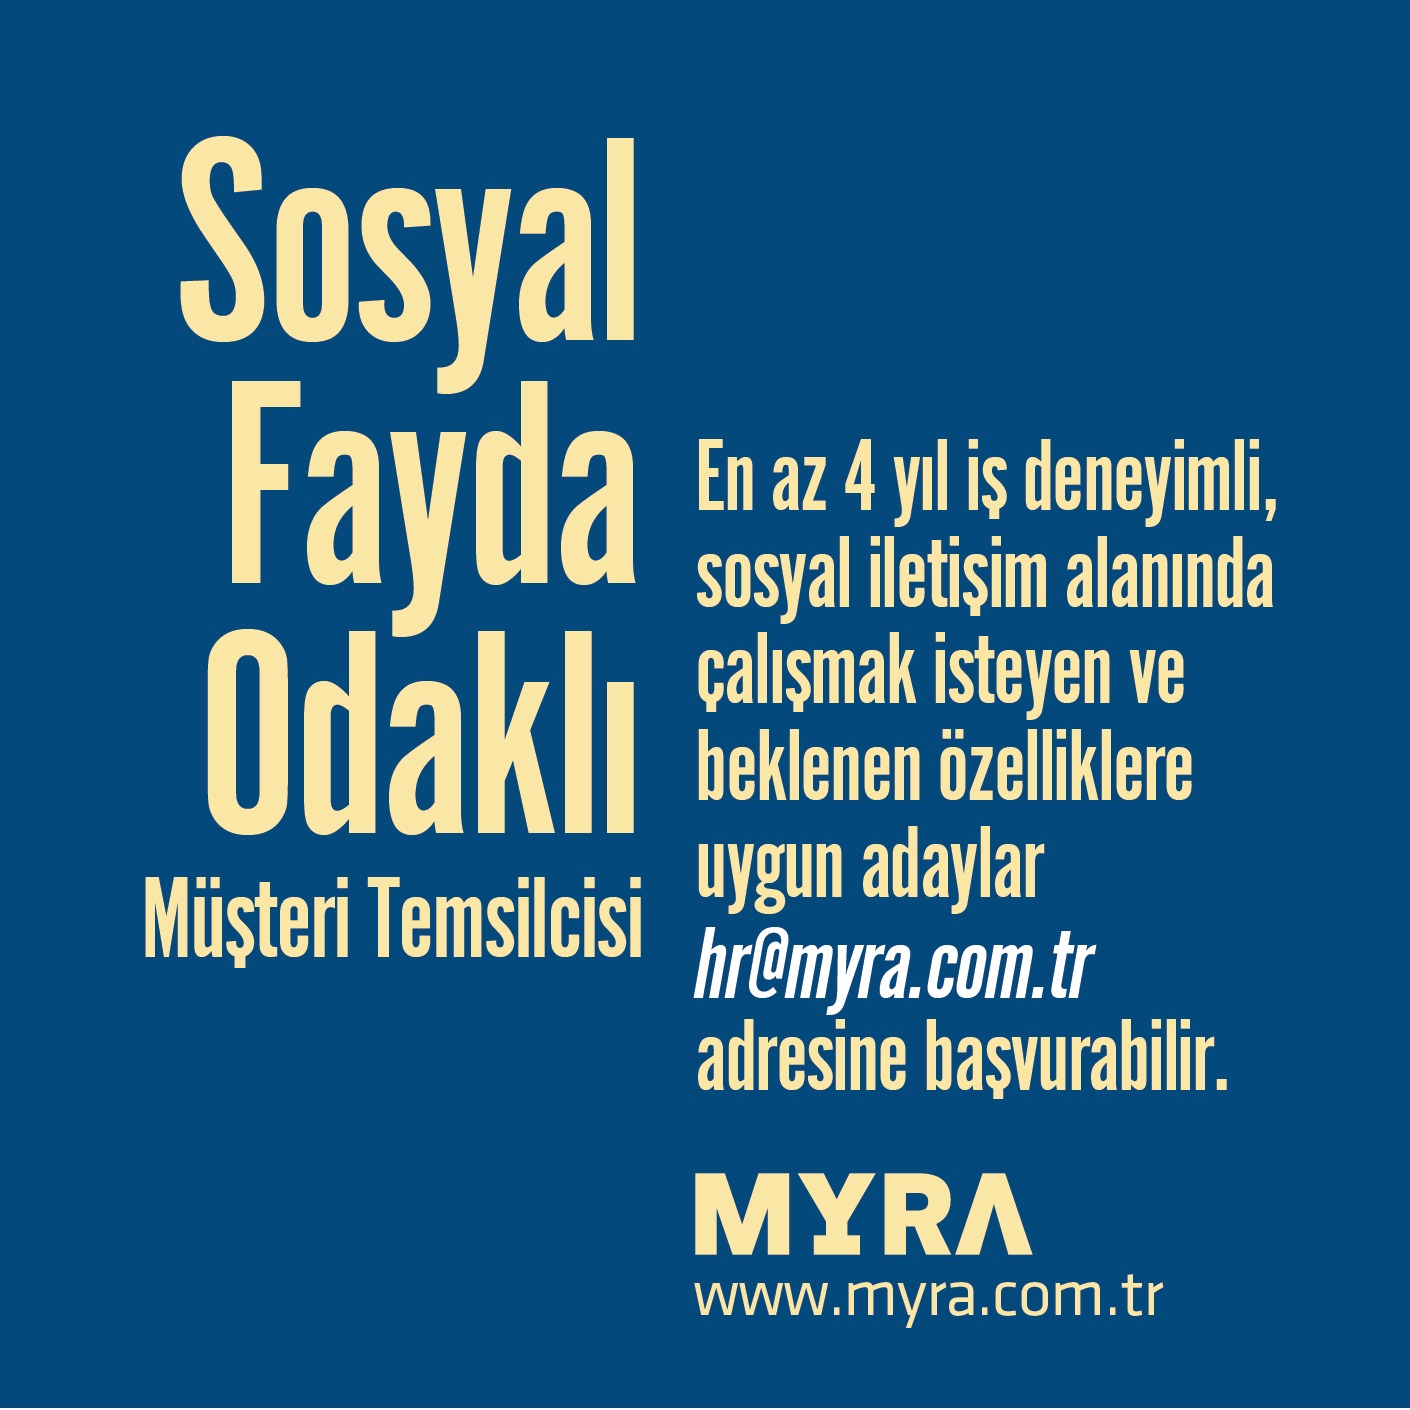 <strong>Myra Sosyal Fayda Odaklı Müşteri Temsilcisi arıyor!</strong>